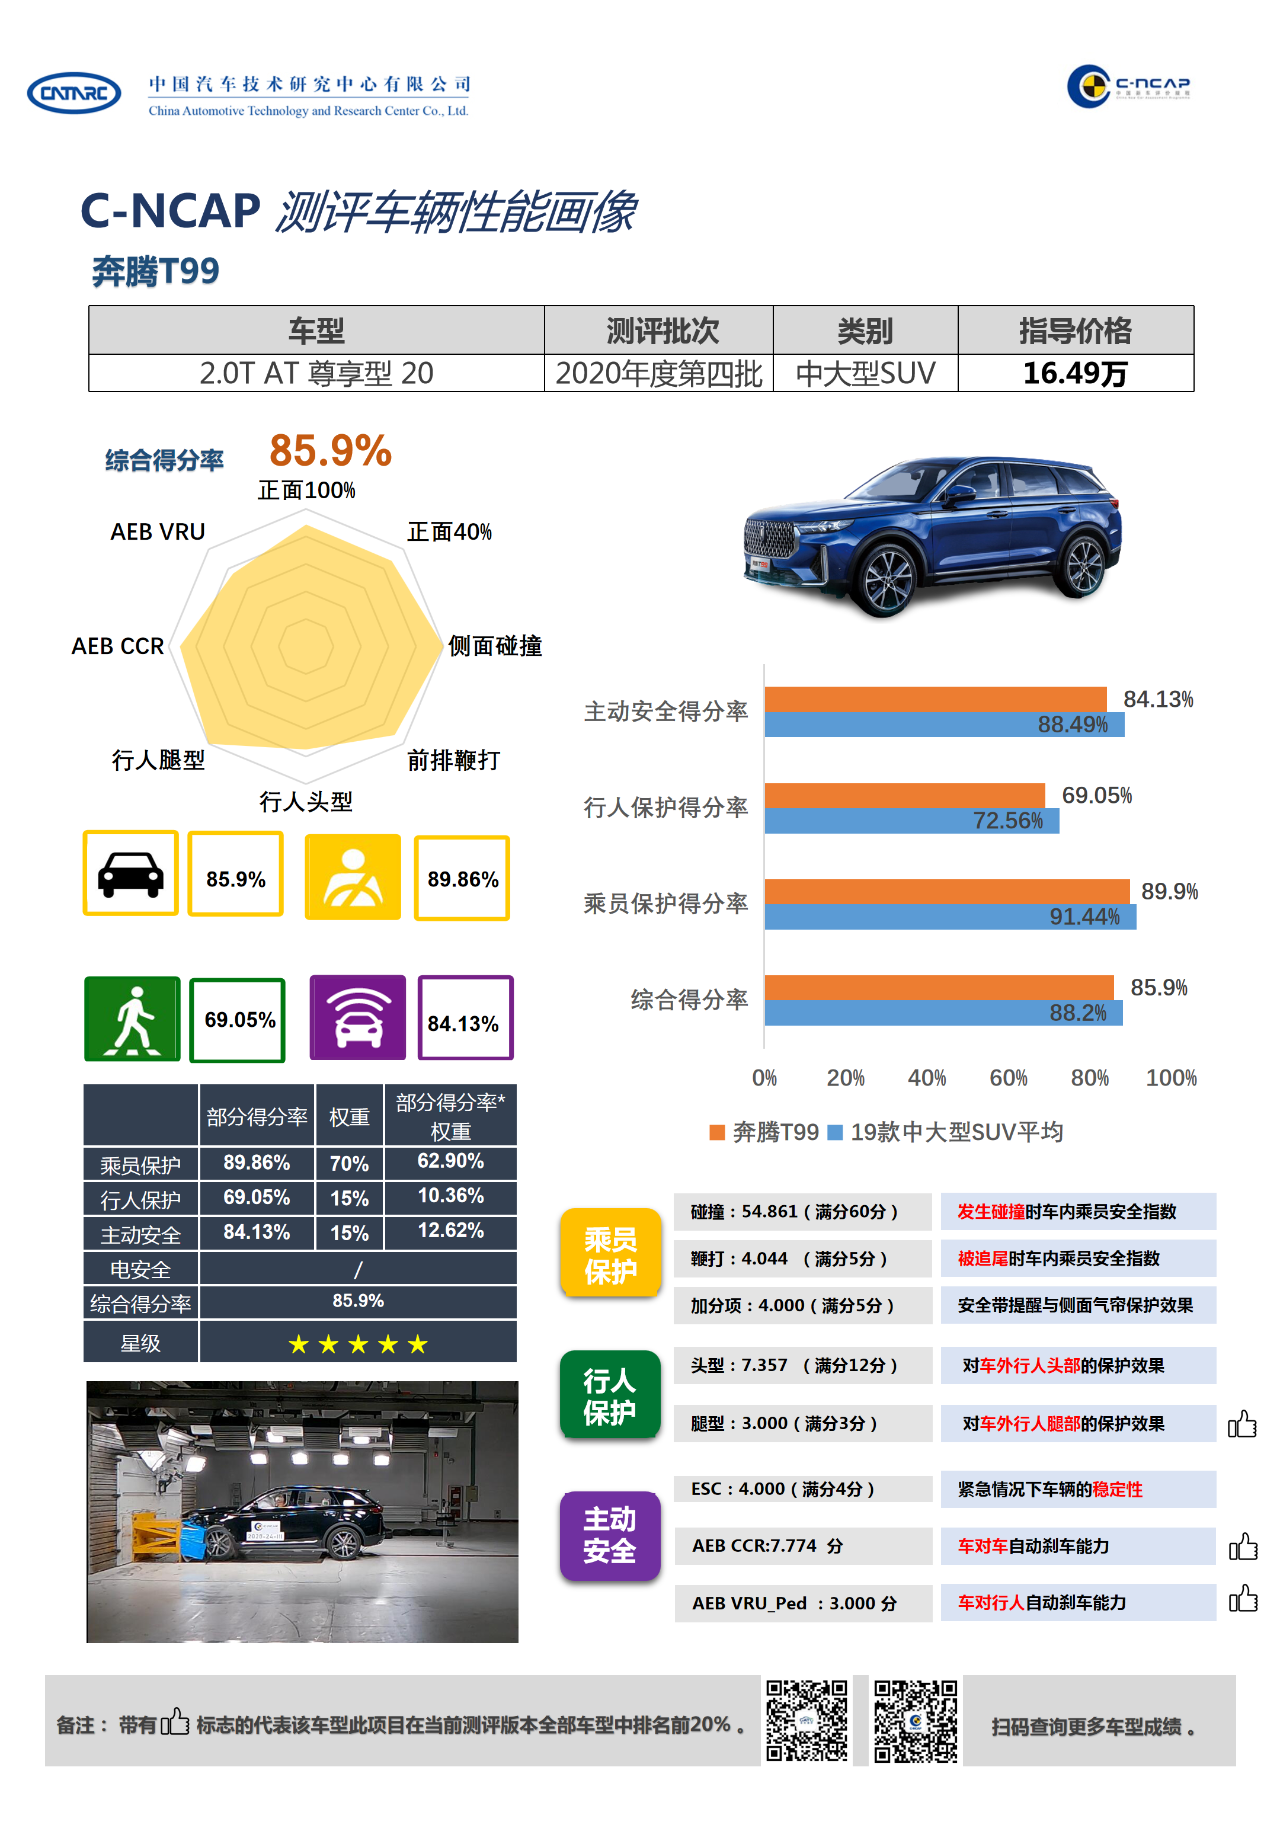 C-NCAP 2020年度第24号车型-奔腾T99评价结果